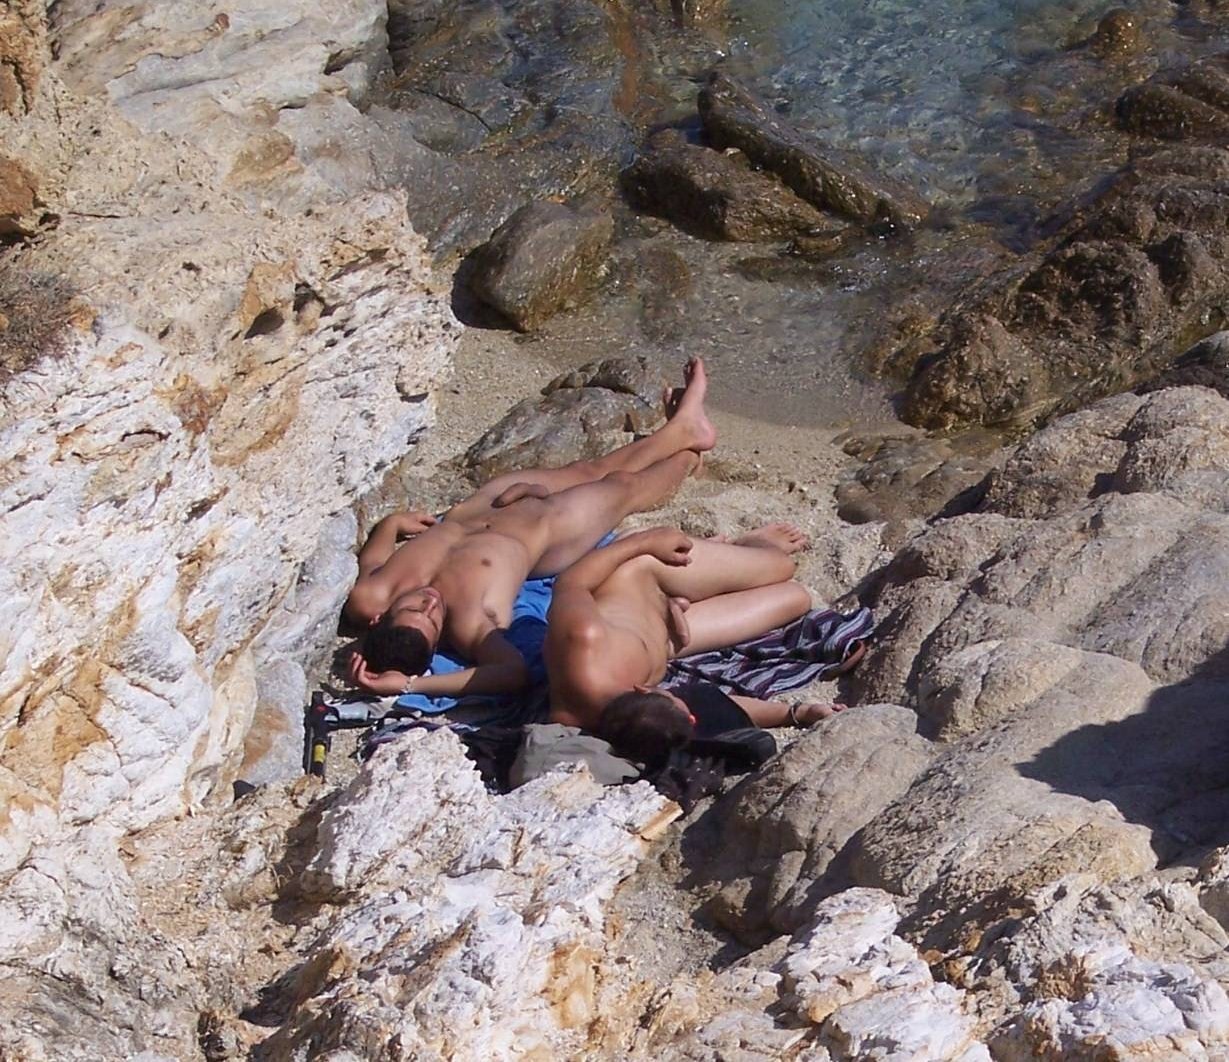 1229px x 1062px - Spy Cam Dude: Nude beach boners!